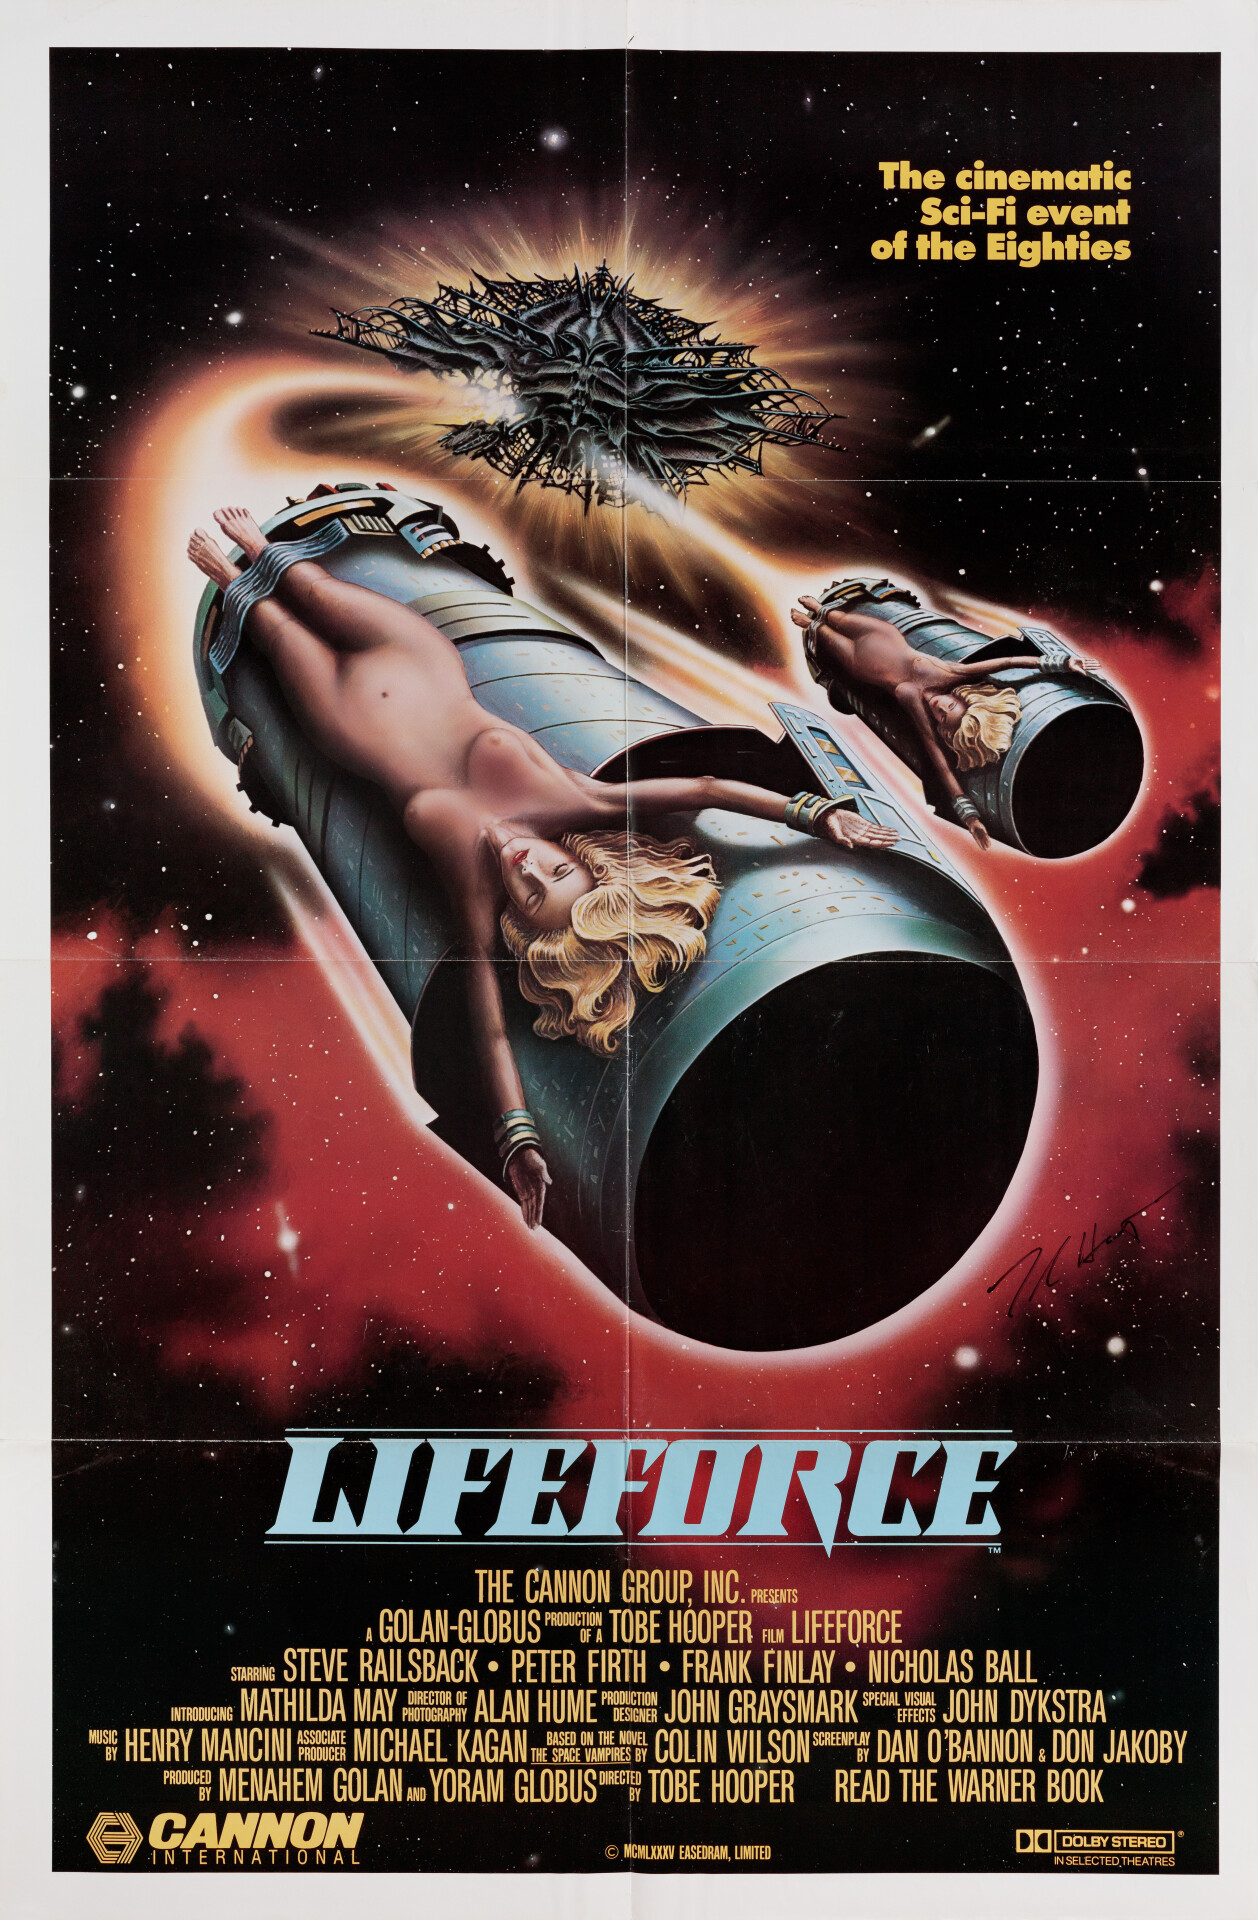 Жизненная сила (Lifeforce, 1985), режиссёр Тобе Хупер, американский постер к фильму (ужасы, 1985 год)